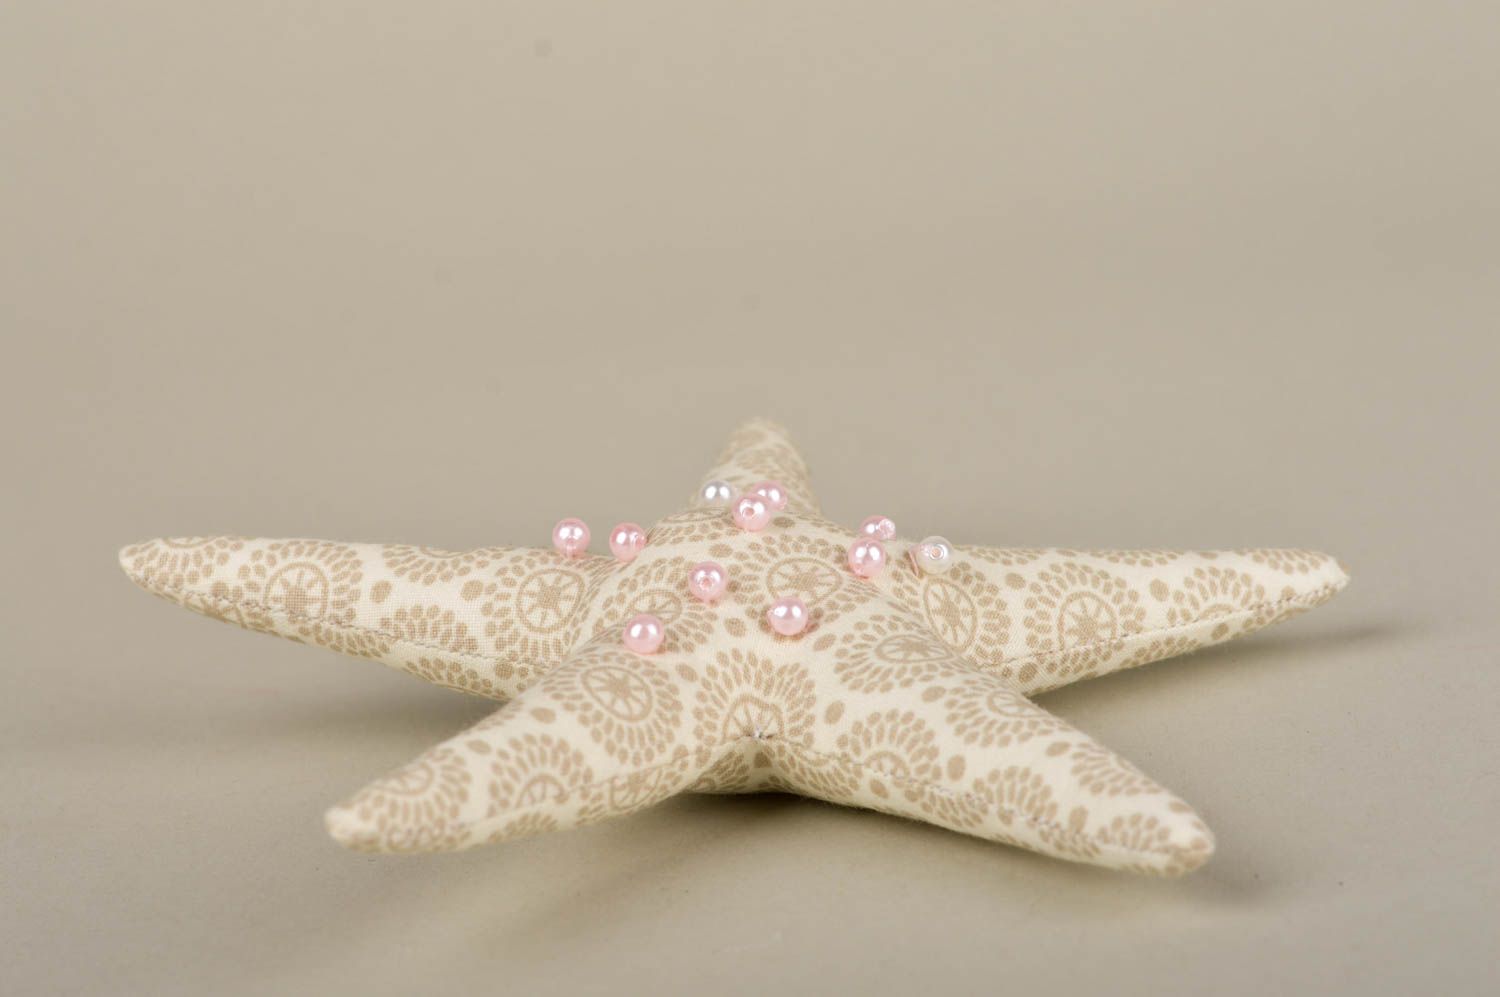 Игрушка ручной работы интересный подарок декоративная игрушка морская звездочка фото 3